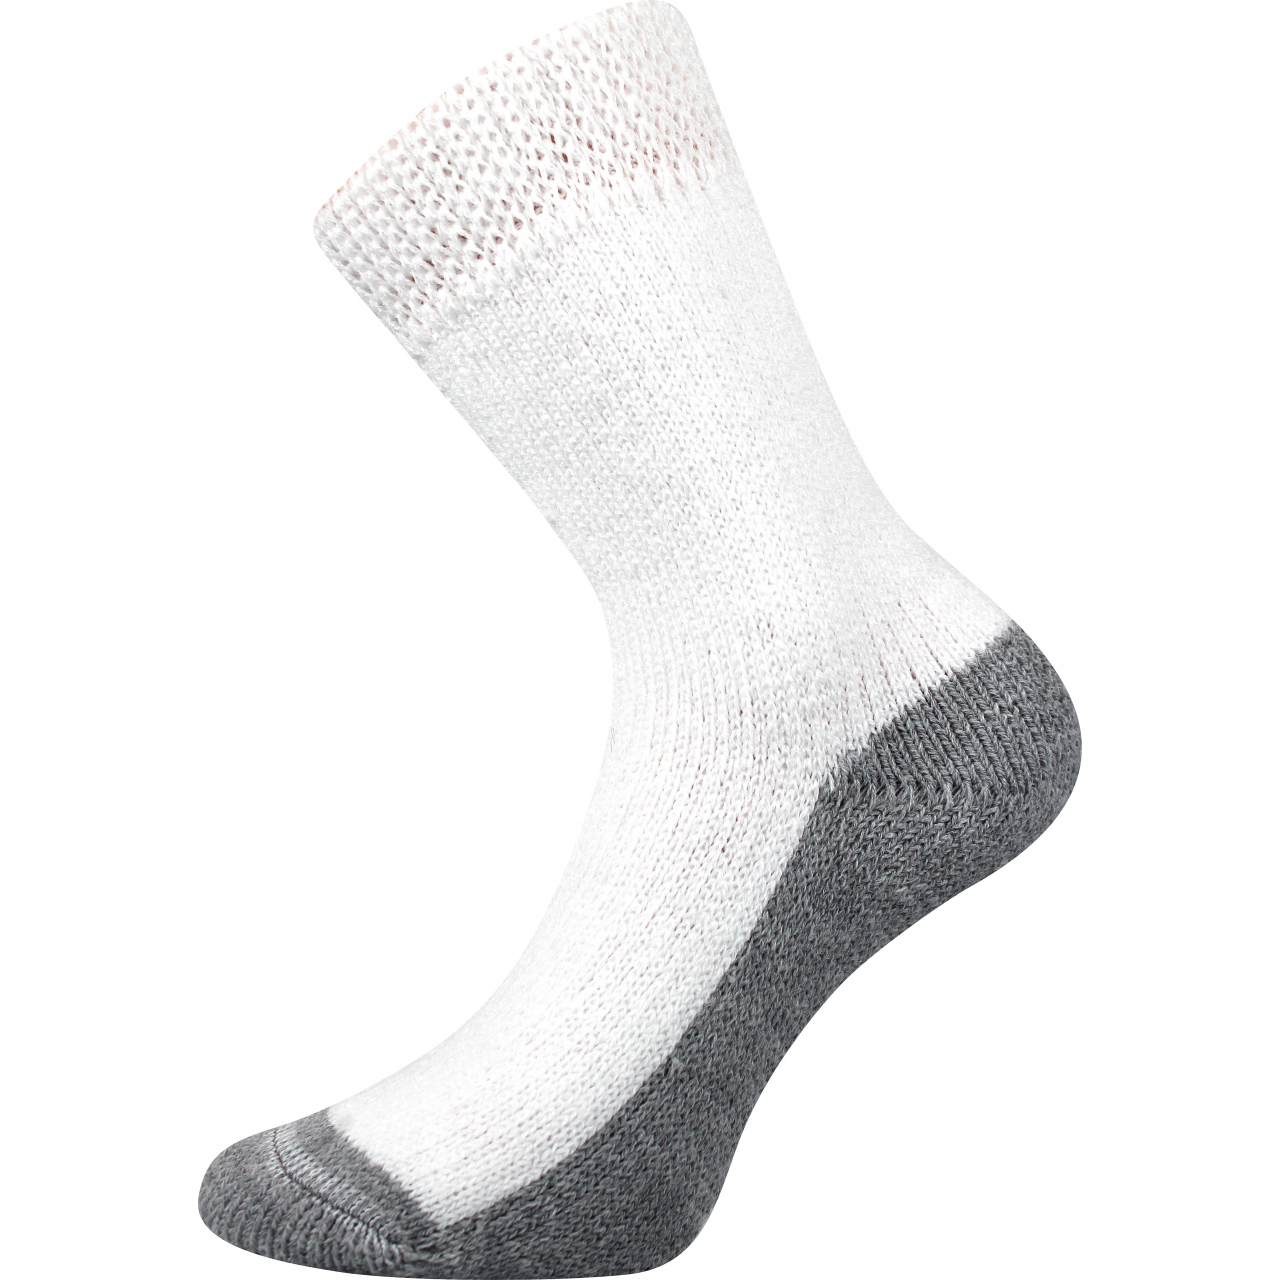 Ponožky unisex Boma Spací - bílé, 39-42